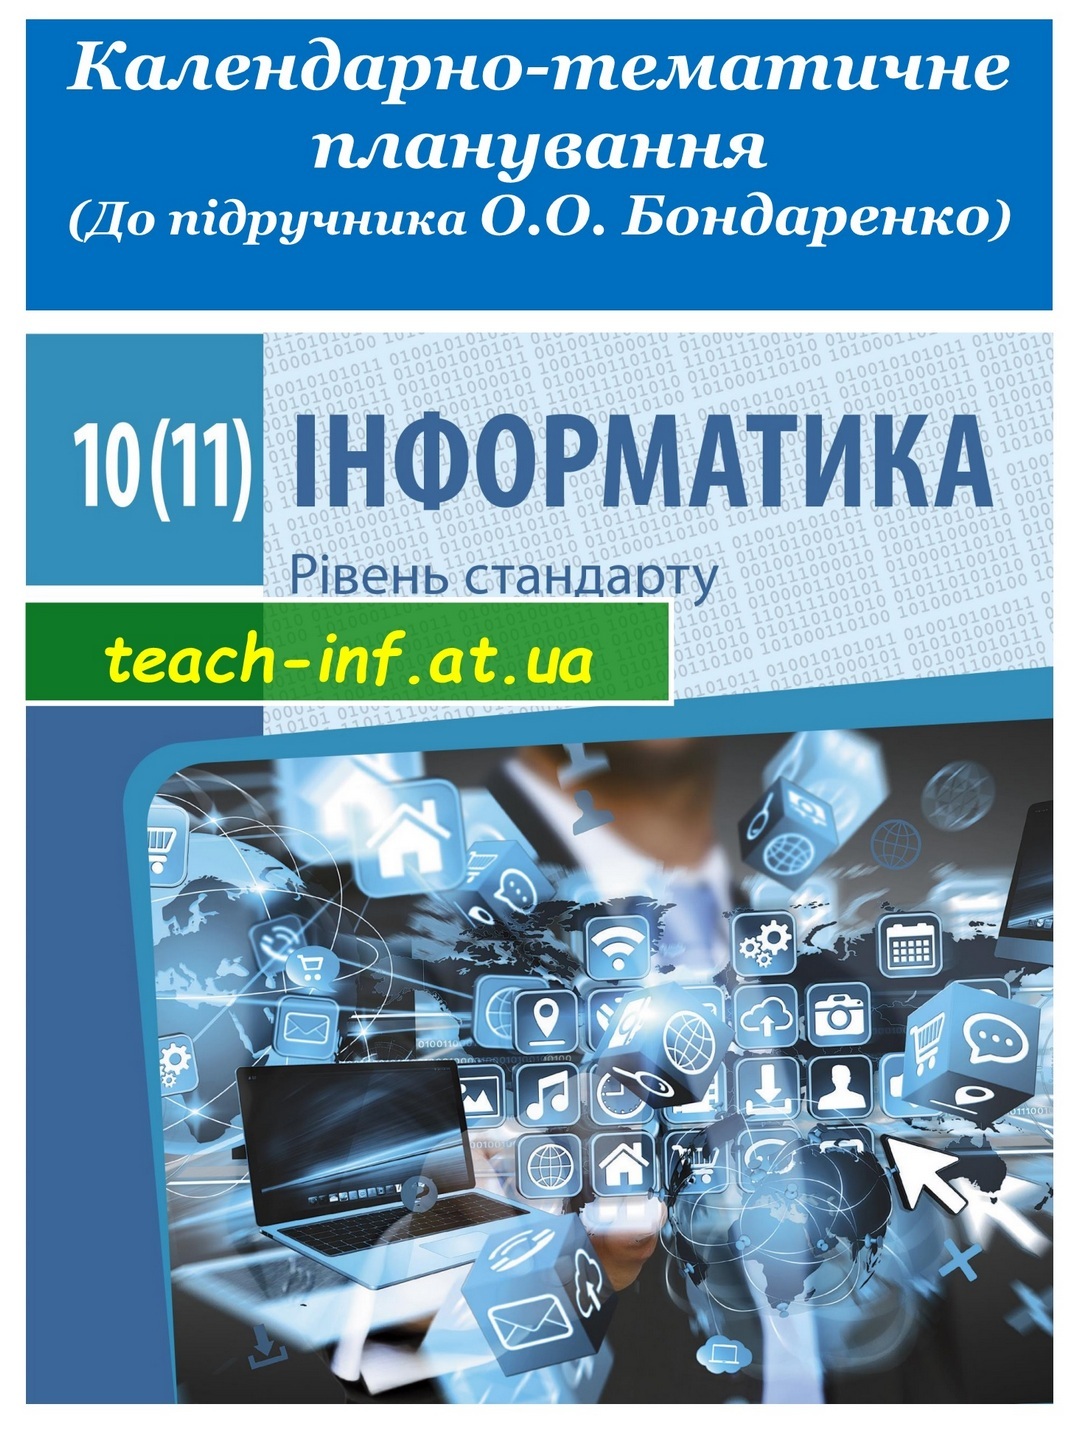 Календарно-тематичне планування. Інформатика 10(11) клас 2019